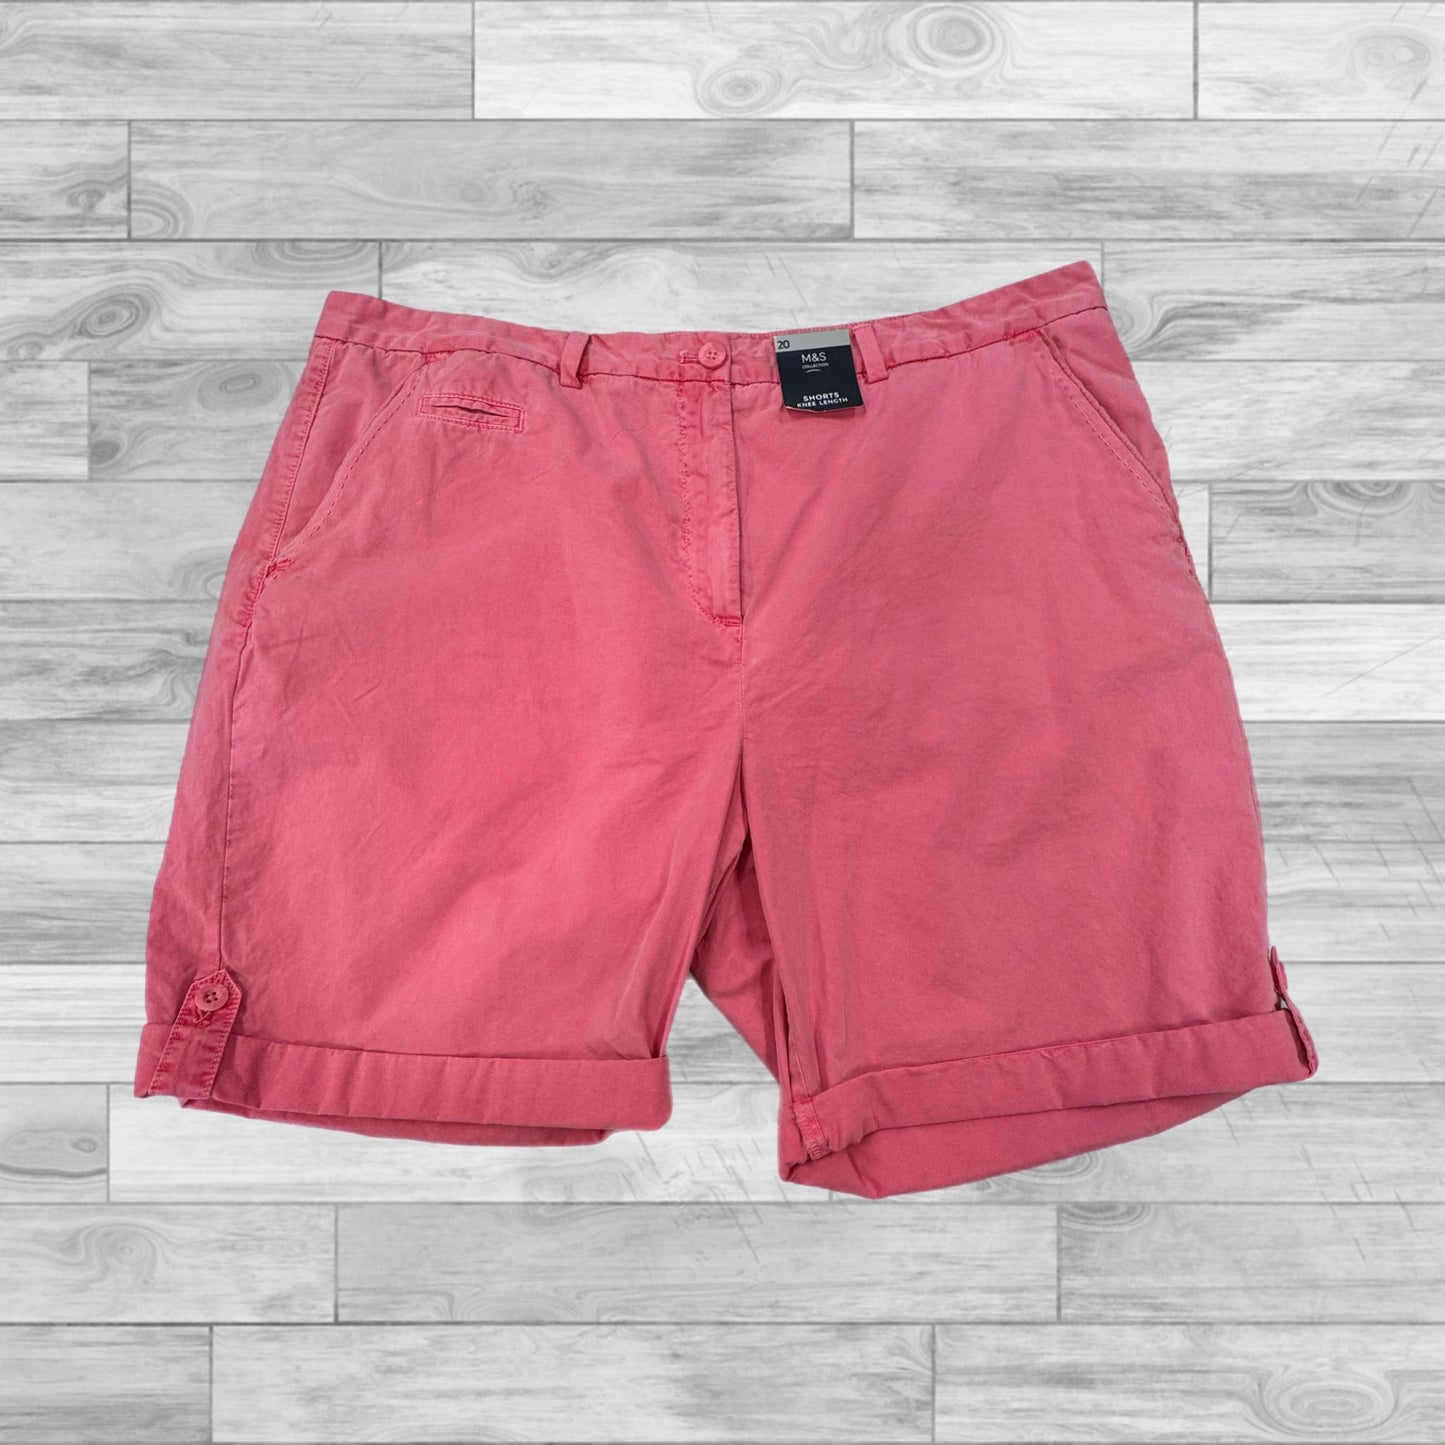 Pink Shorts Cmc, Size 16